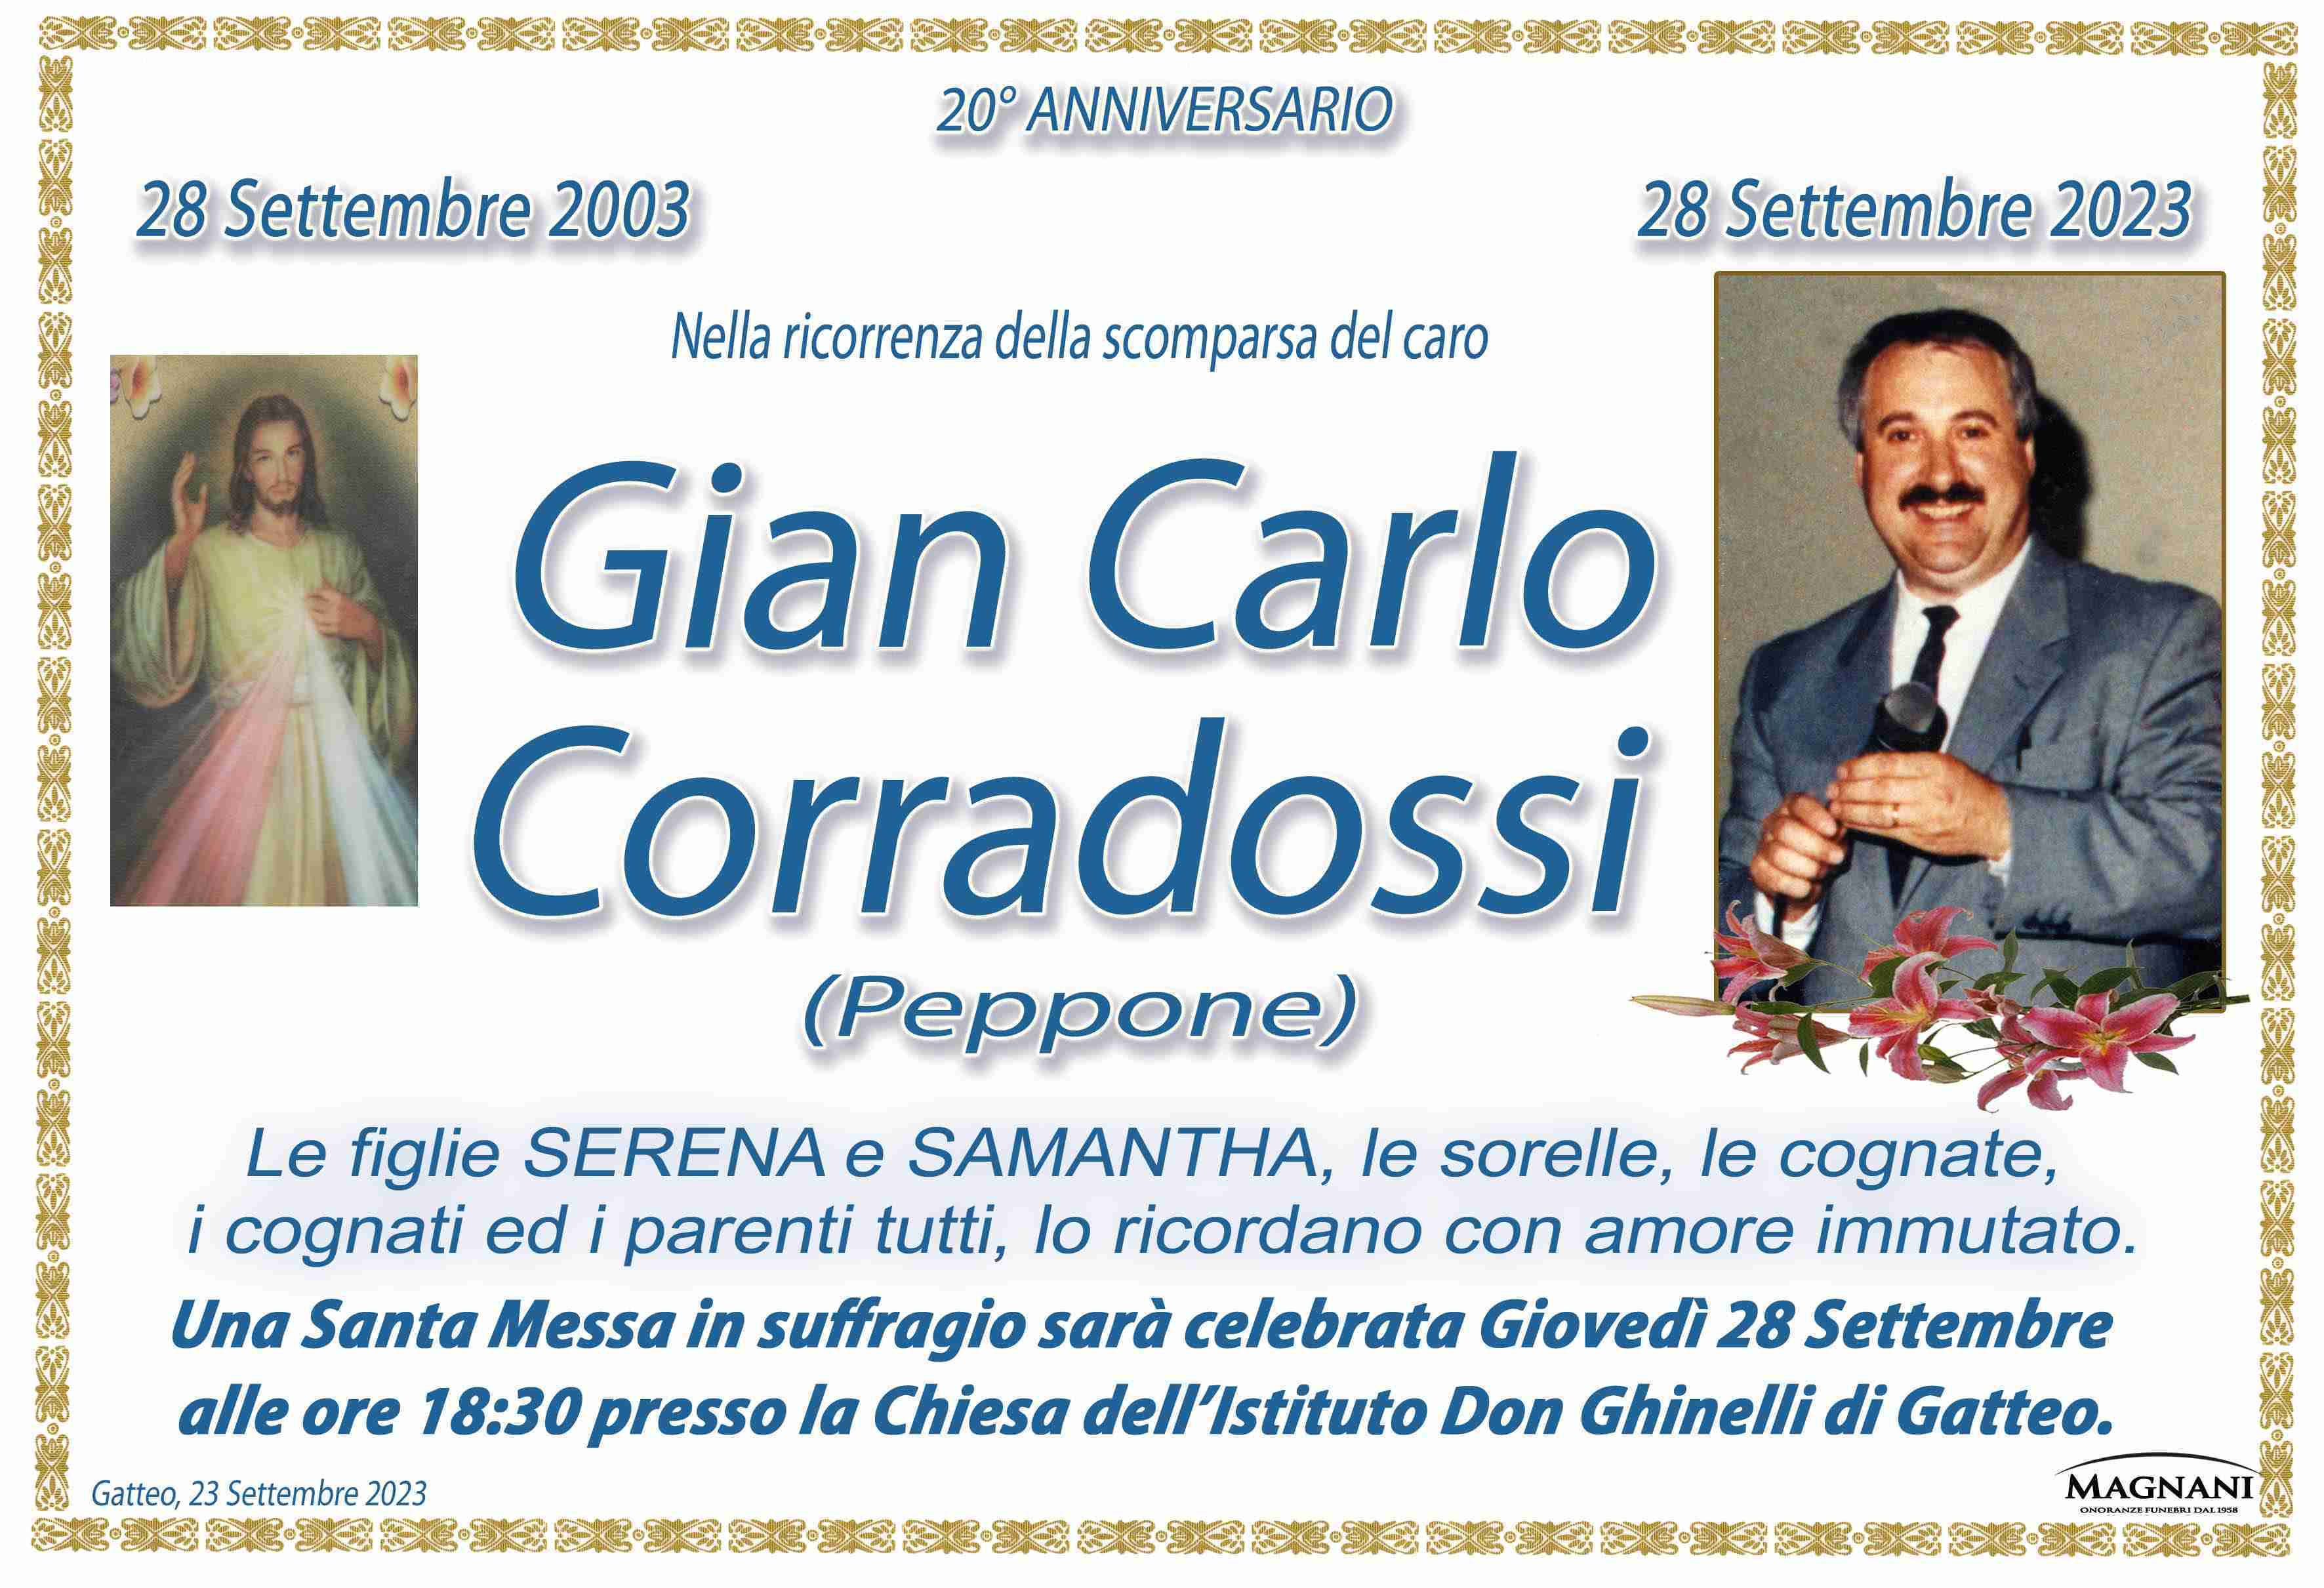 Gian Carlo Corradossi